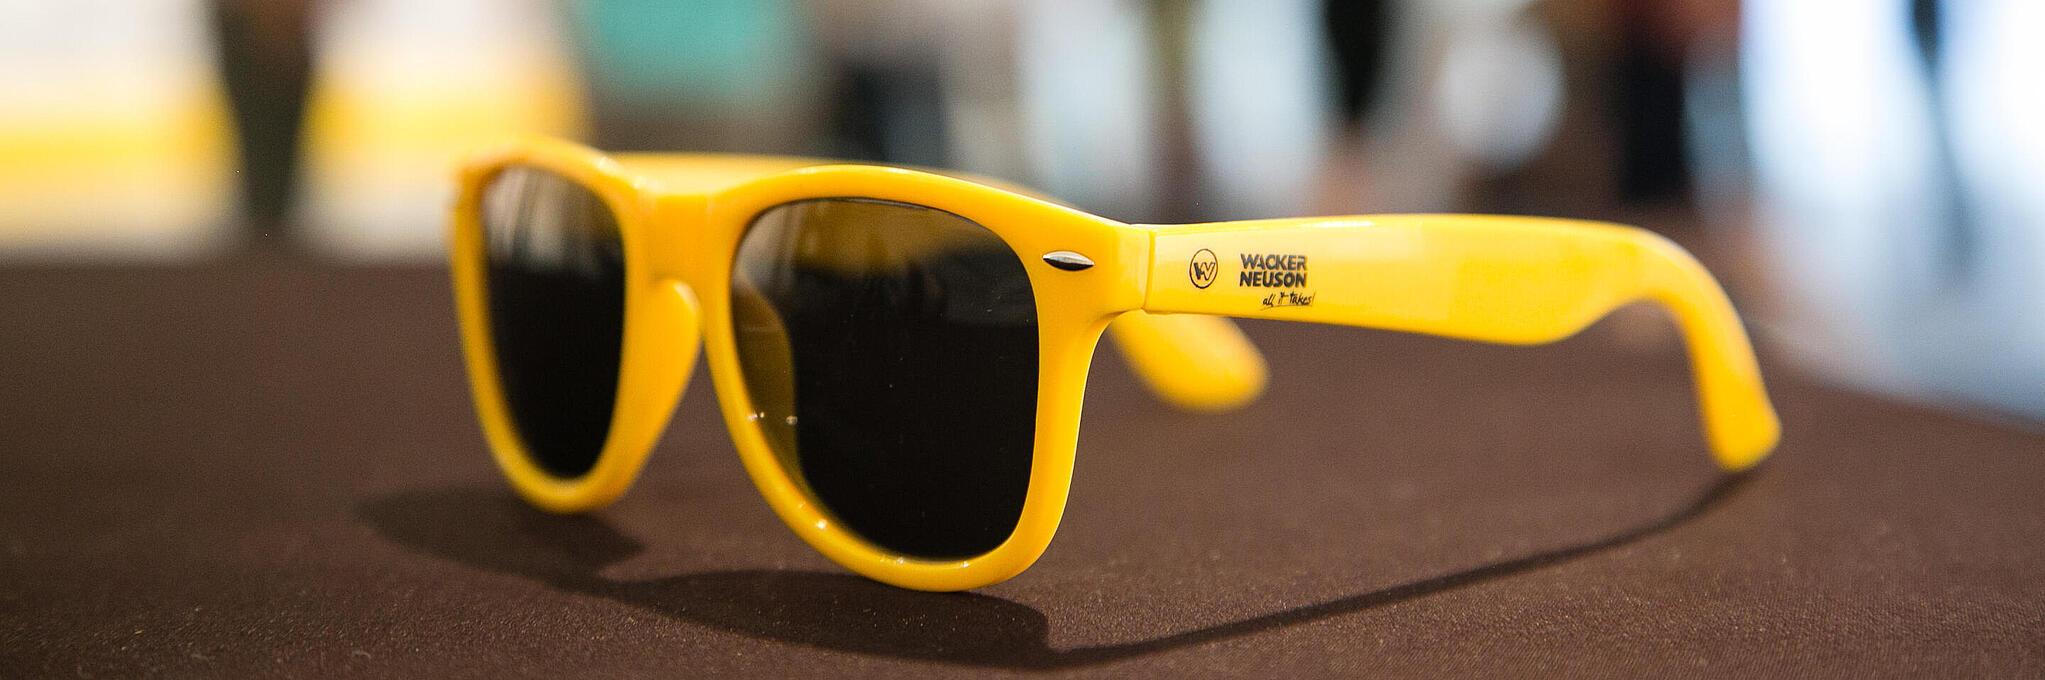 Gelbe Sonnenbrille mit Wacker Neuson Logo.